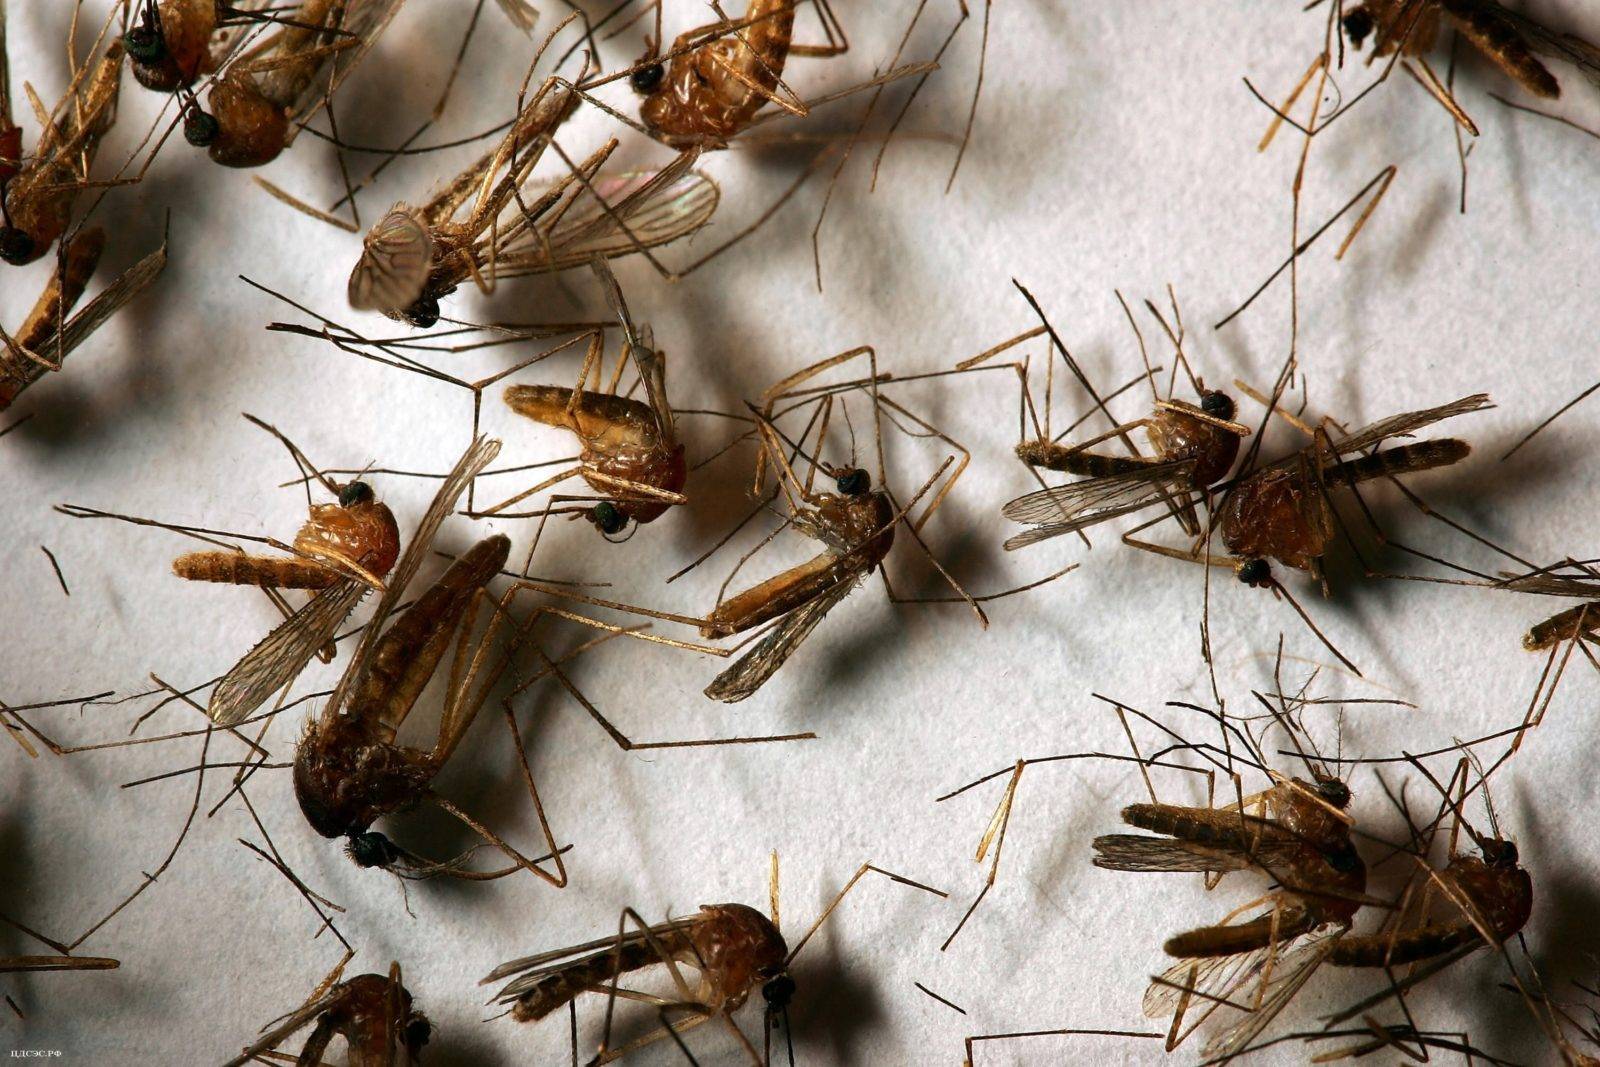 Комары в подвале частного дома: как избавиться народными методами, ловушками, химикатами